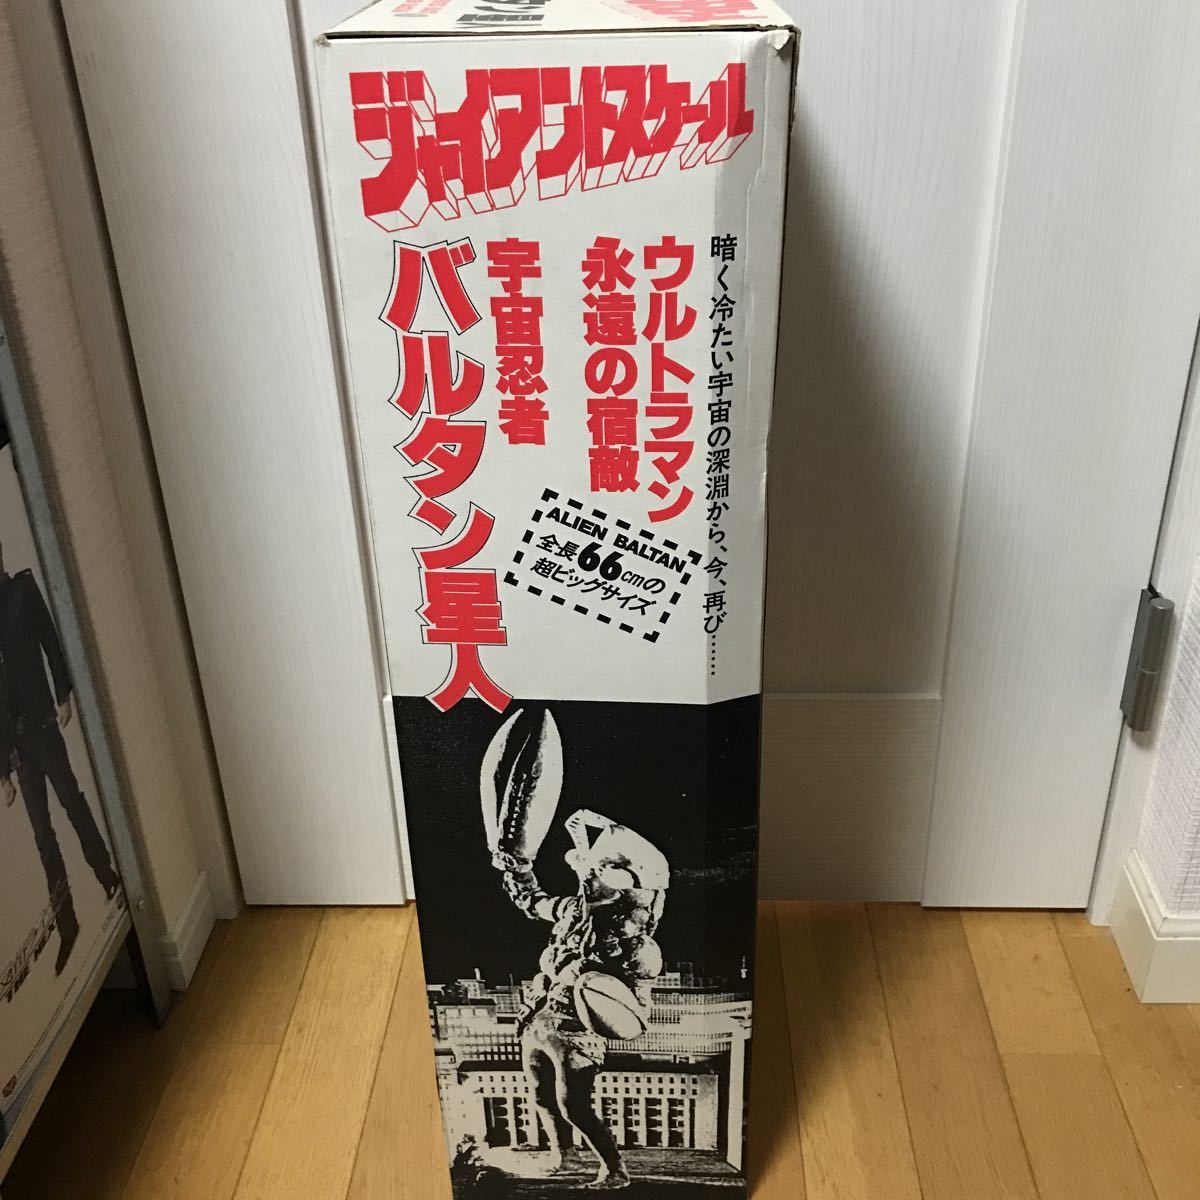 iotho[ не использовался ценный товар ] Ultraman ja Ian to шкала Baltan Seijin большой размер sofvi фигурка высота примерно 66cm